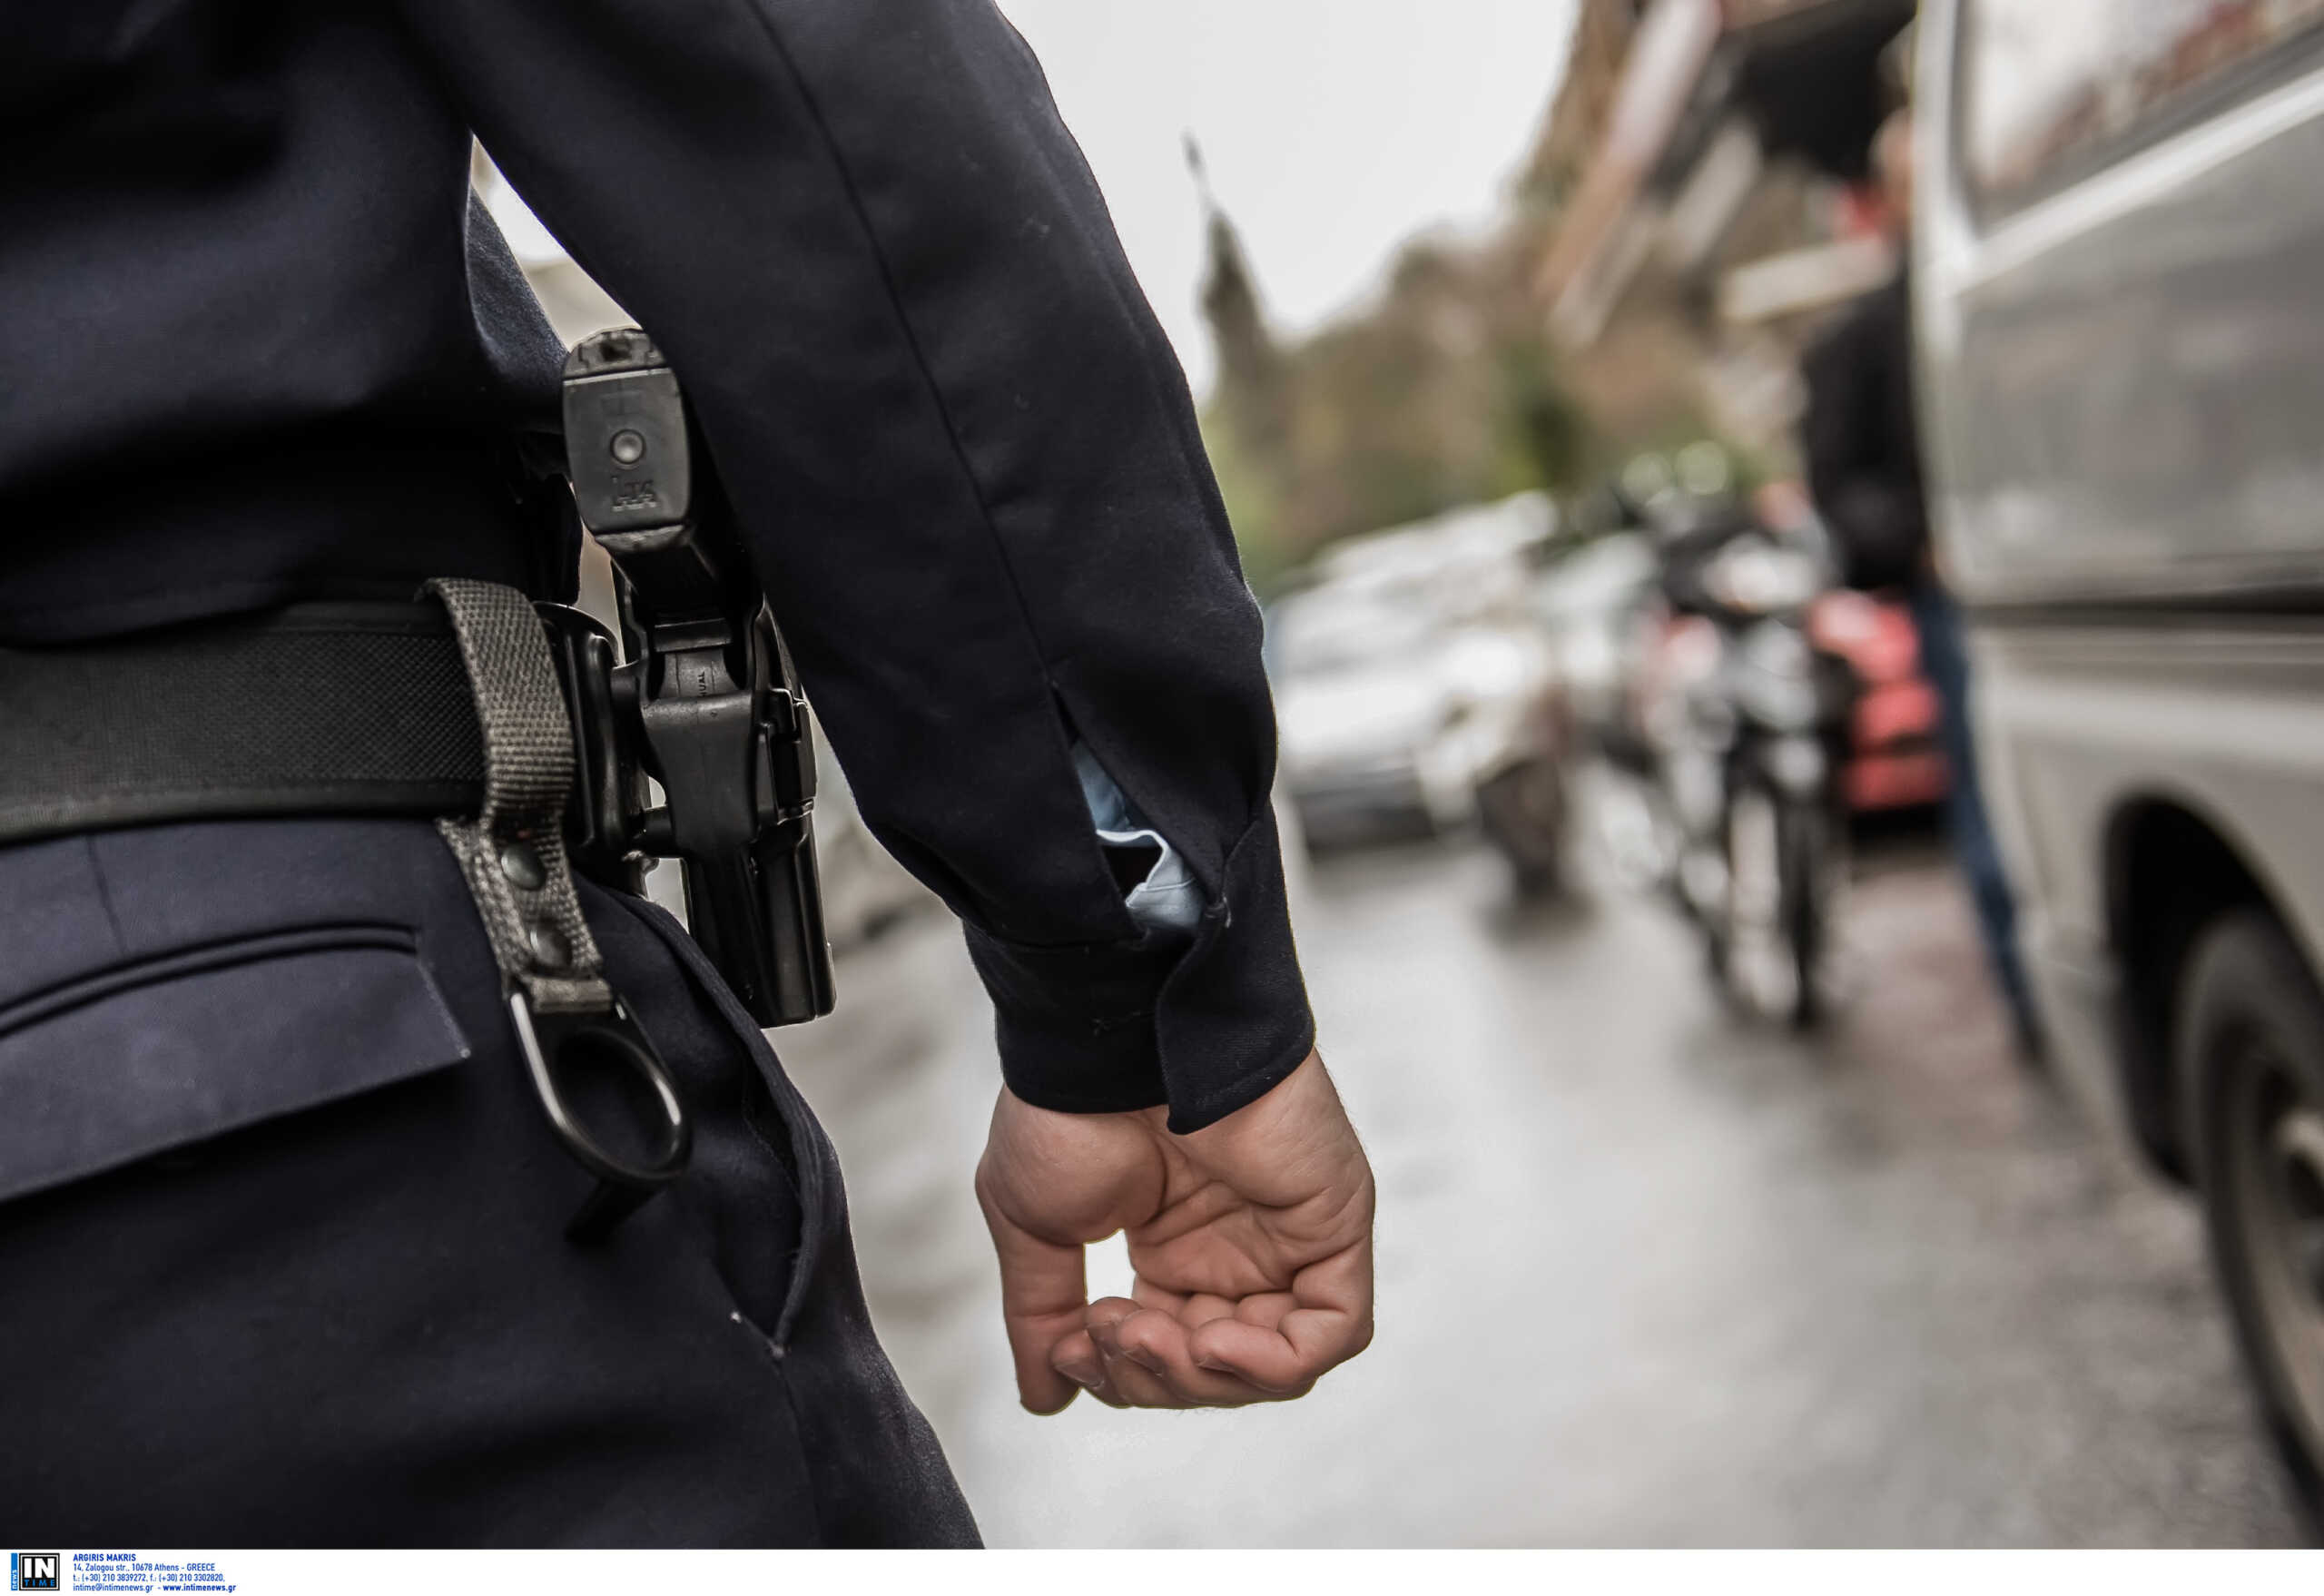 Ζάκυνθος: Αξιωματικός της ΕΛ.ΑΣ εκβίαζε καταστηματάρχες – Αποκλειστικά η δικογραφία στο newsit.gr